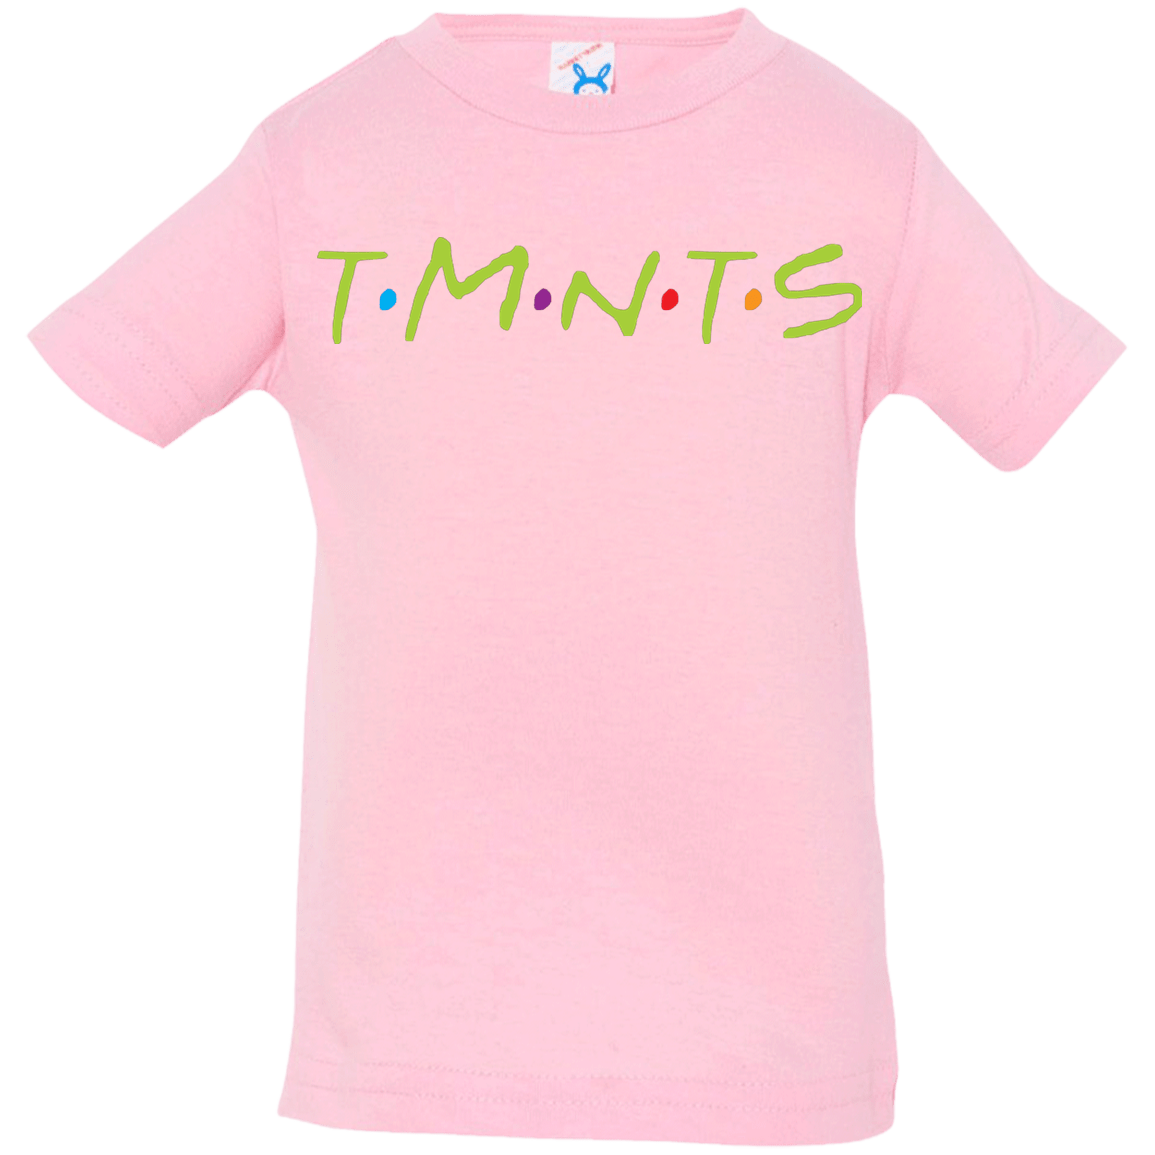 T-Shirts Pink / 6 Months TMNTS Infant Premium T-Shirt